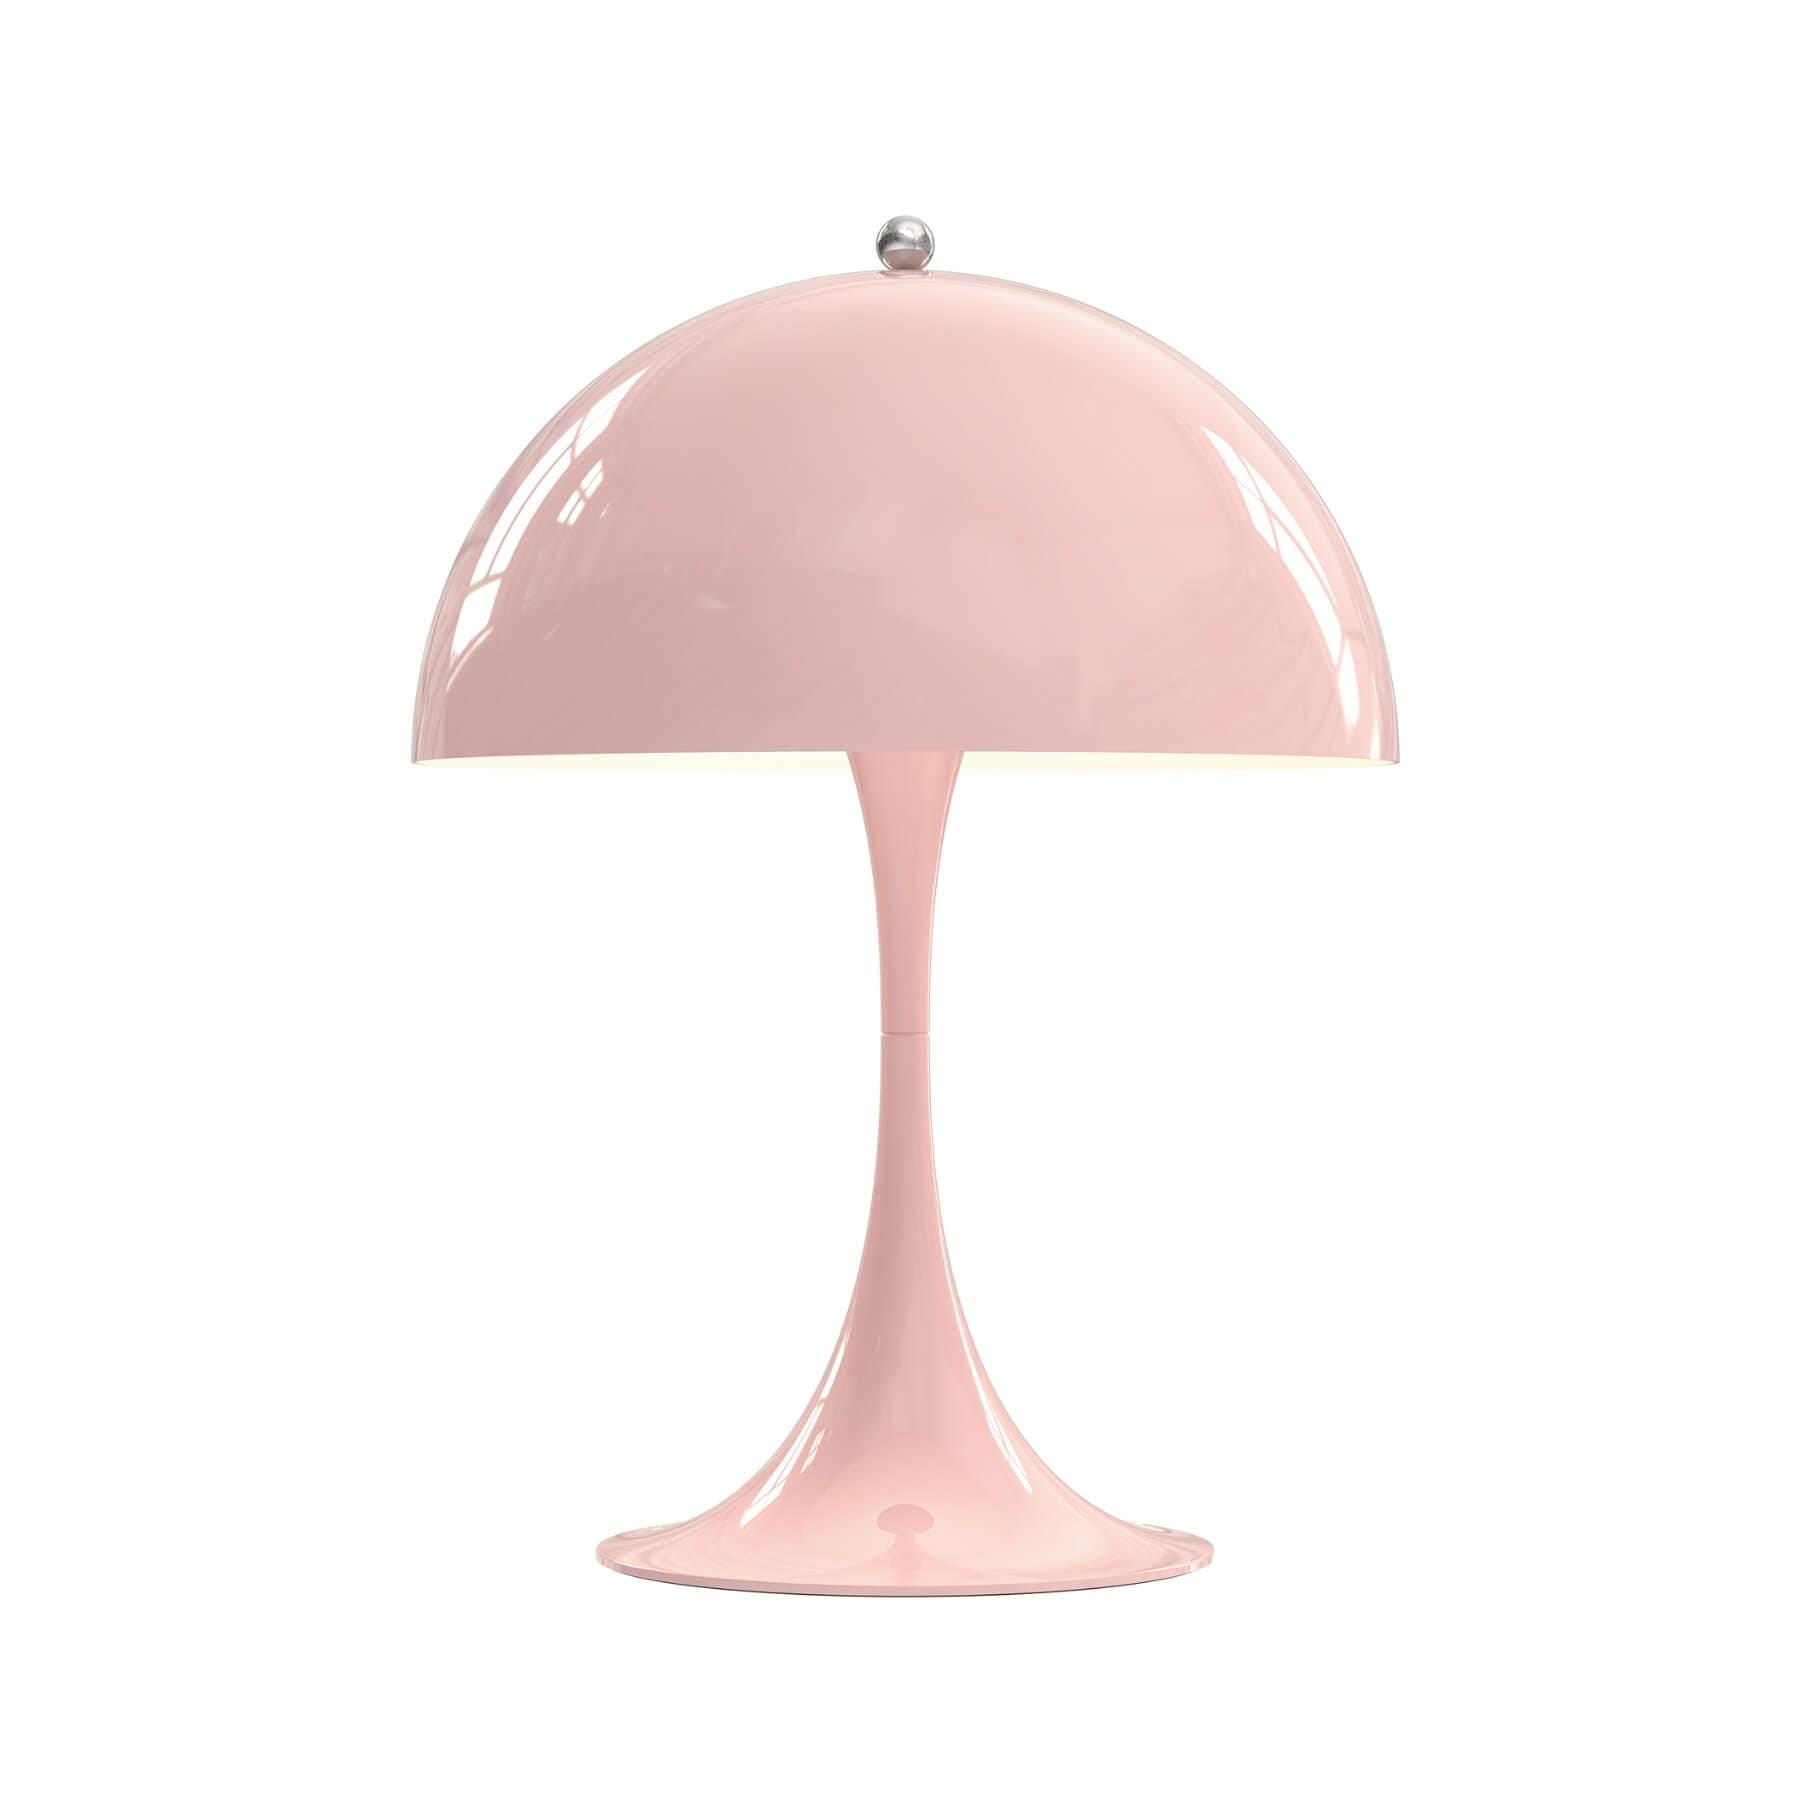 Louis Poulsen Panthella 250 Table Lamp Pale Rose Blue Designer Lighting From Holloways Of Ludlow